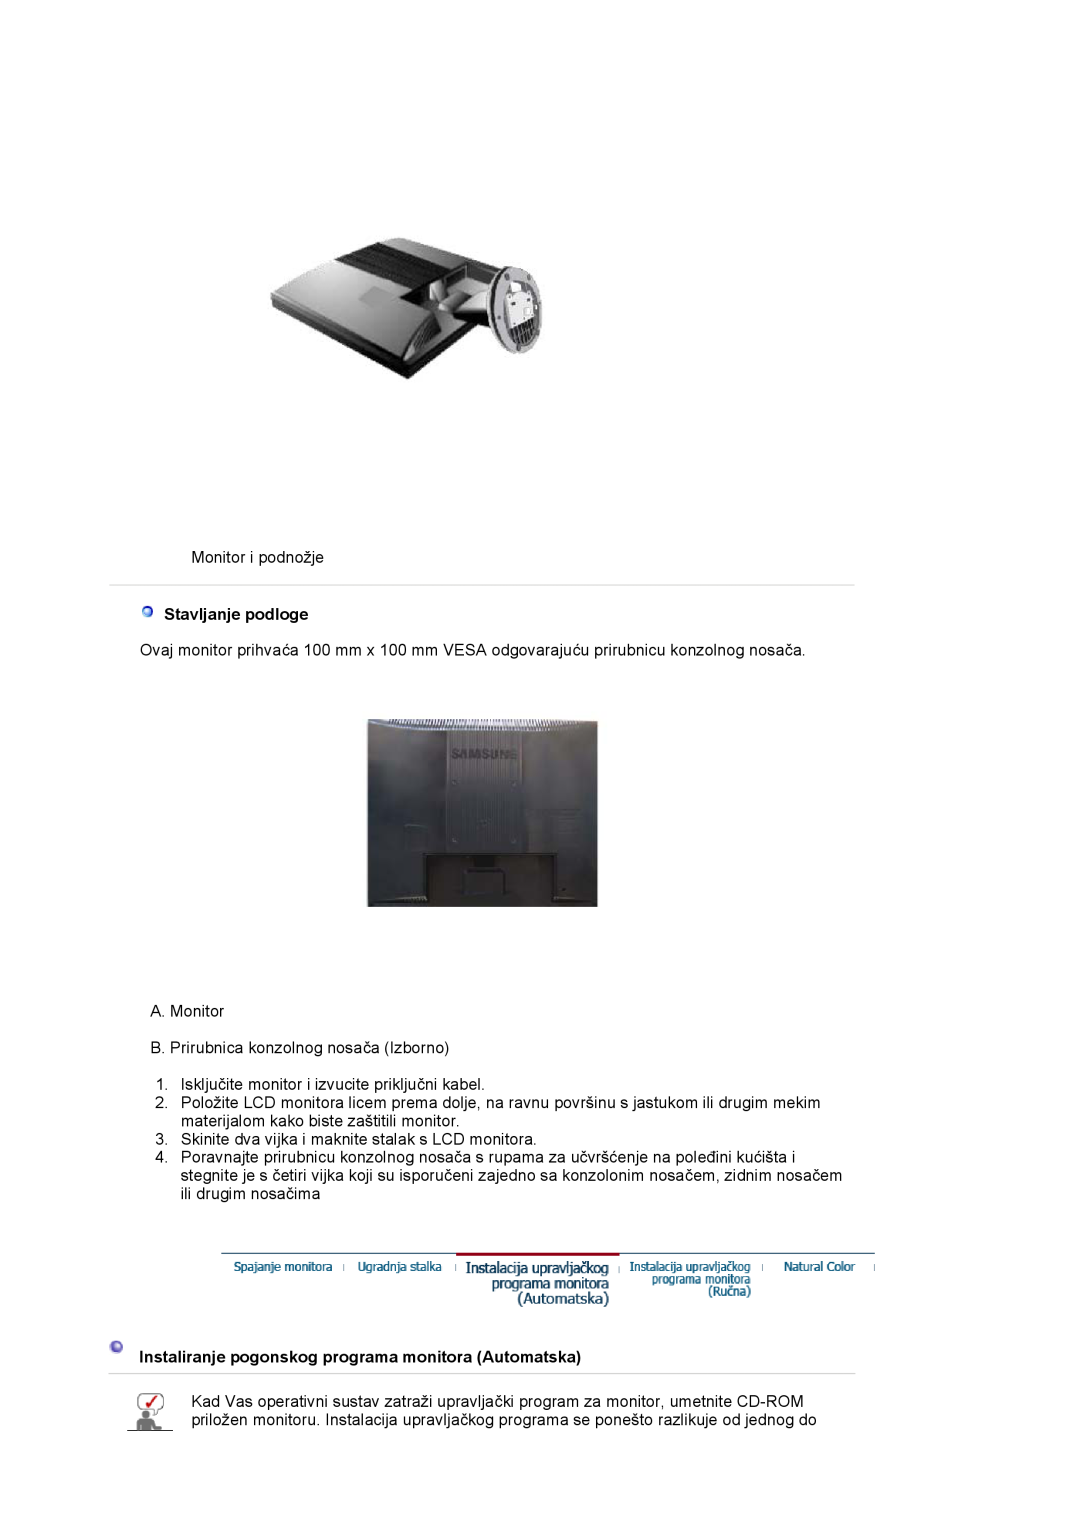 Samsung LS17MJVKS/EDC manual Stavljanje podloge, Instaliranje pogonskog programa monitora Automatska 